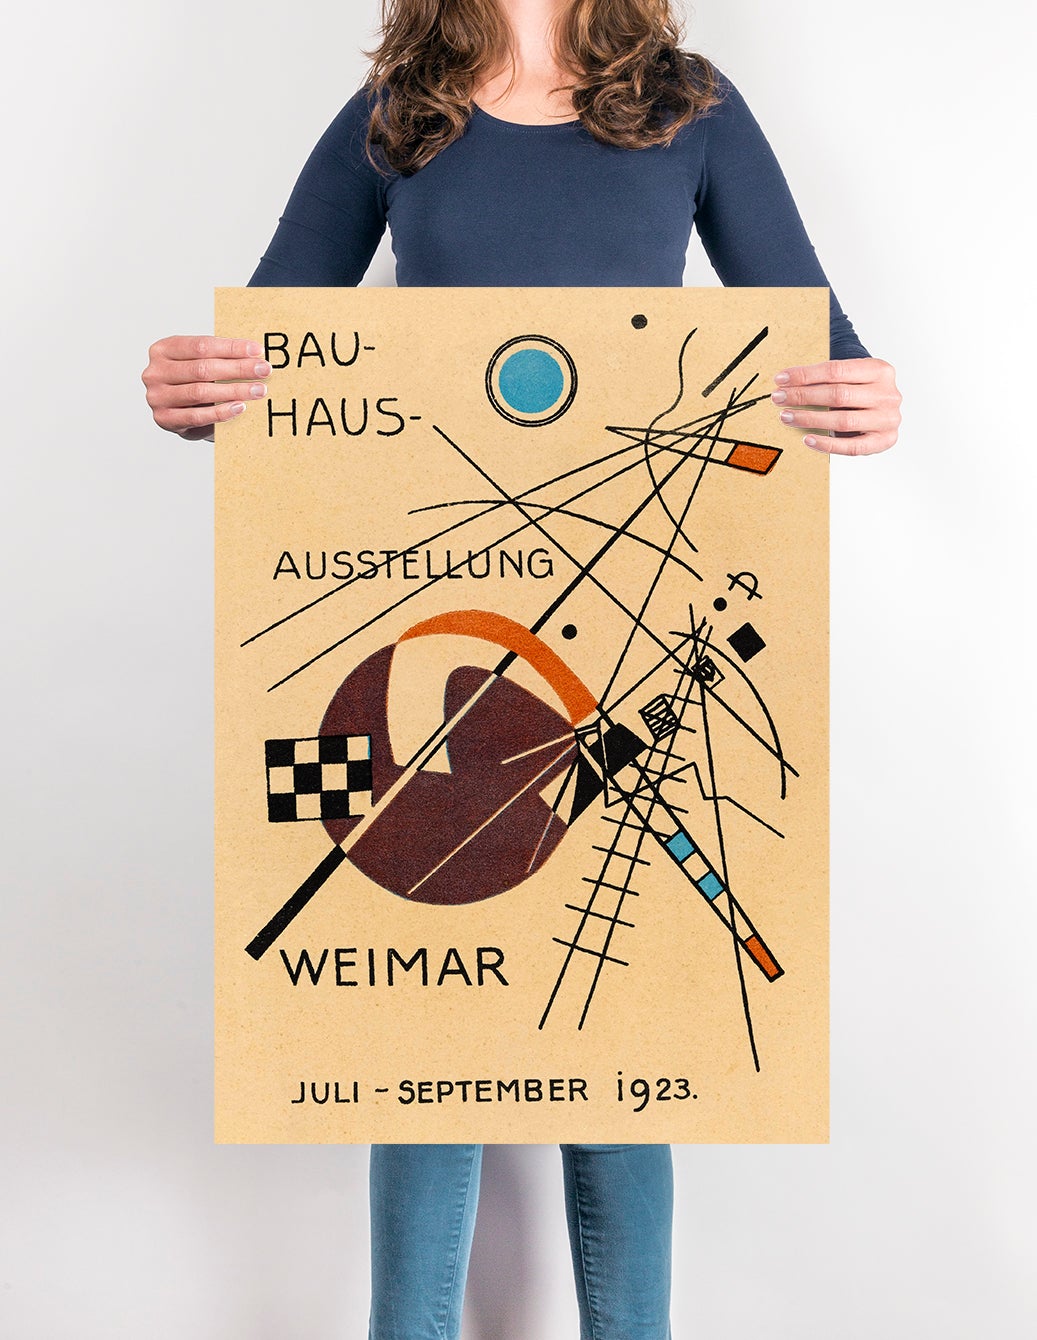 Bauhaus Ausstellung 1923 Weimar Poster by Wassily Kandinsky – Frill